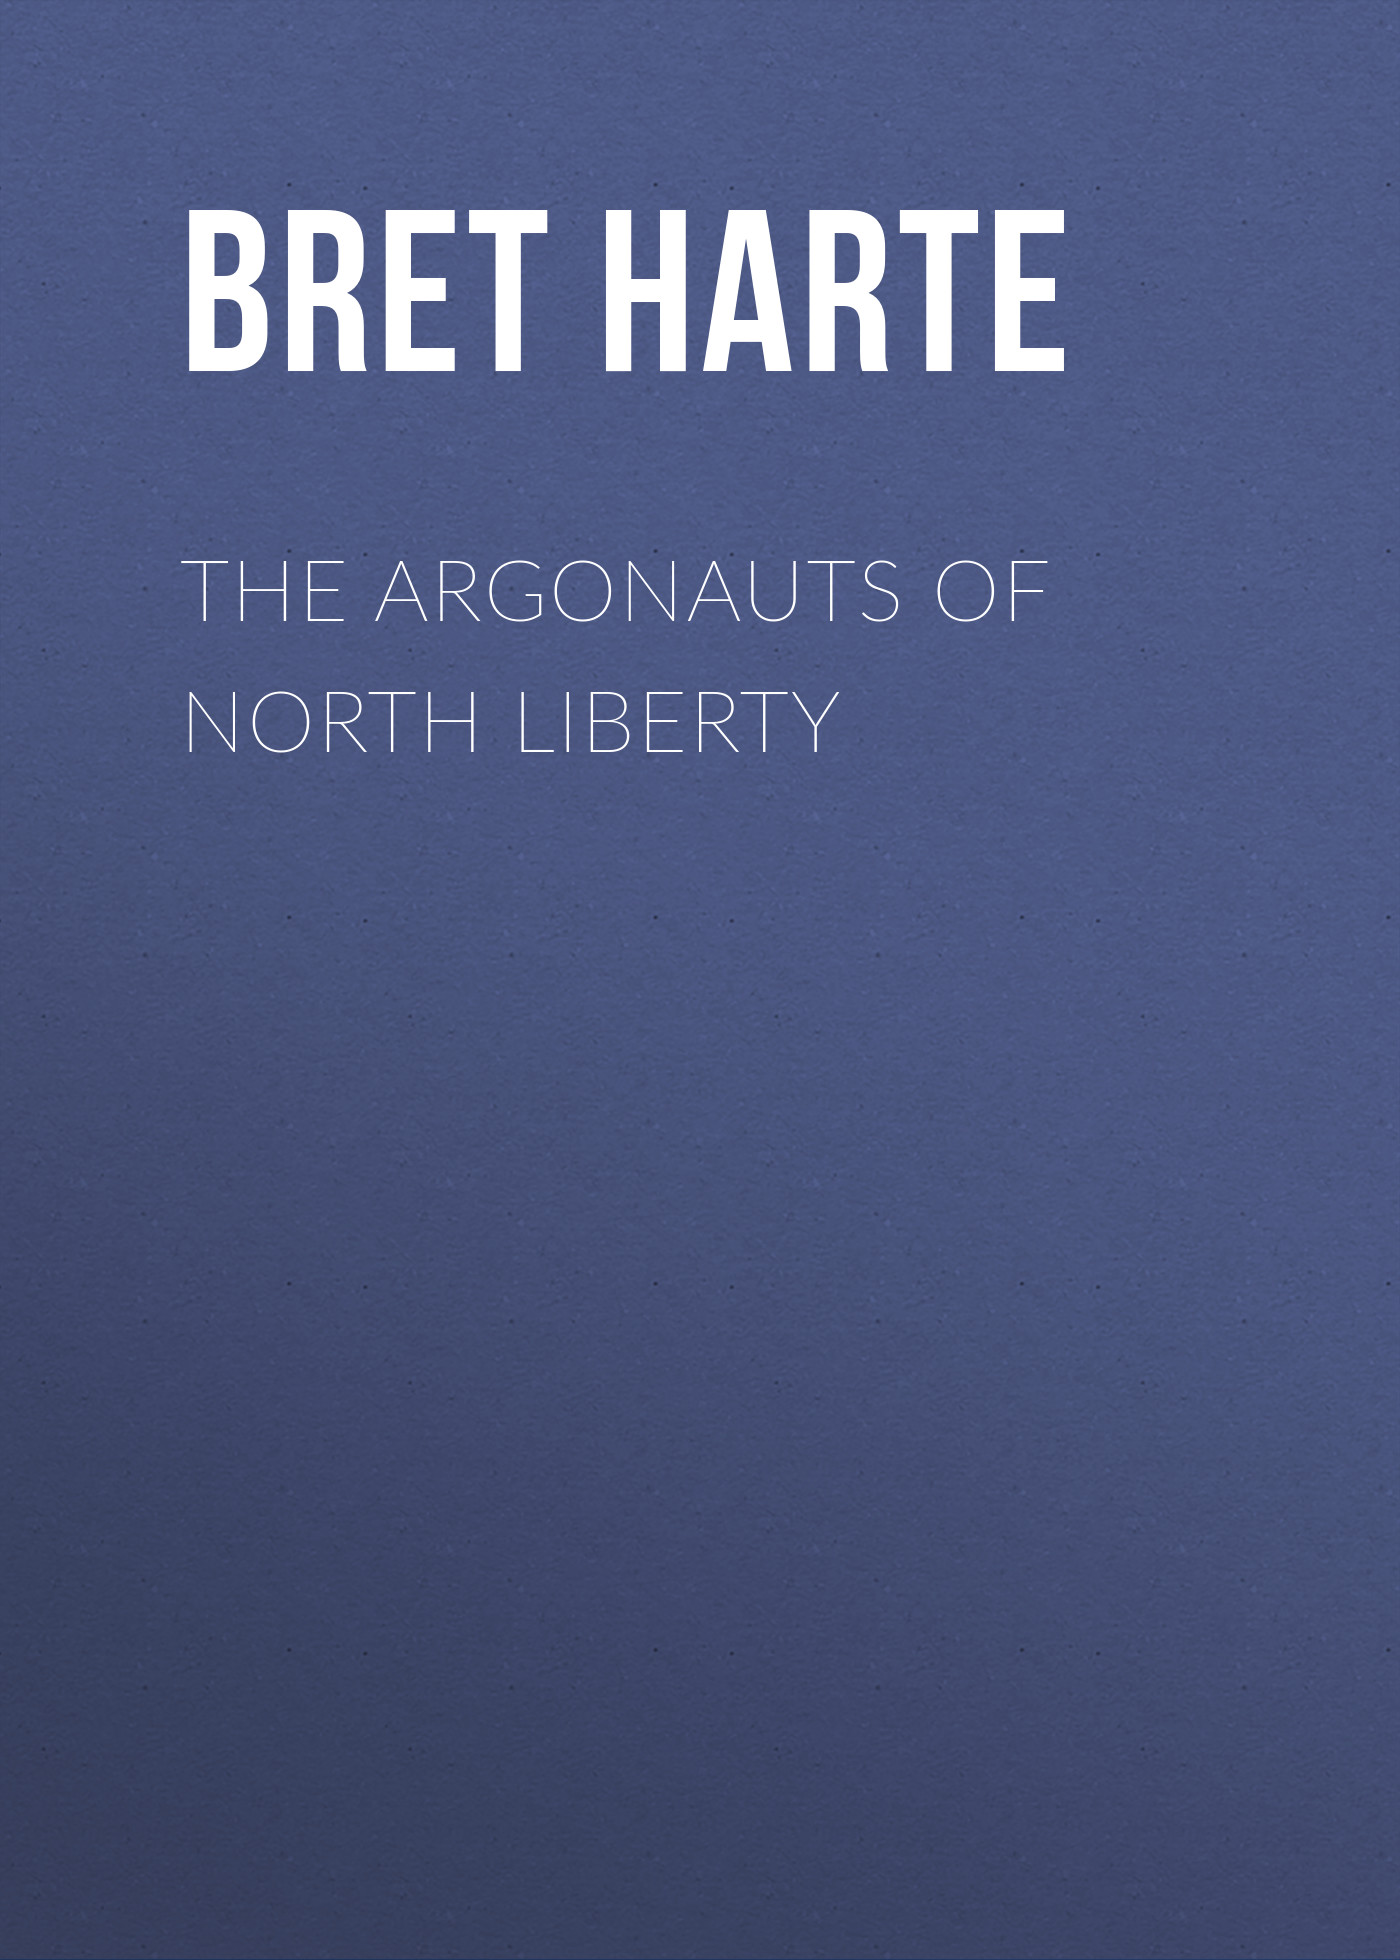 Книга The Argonauts of North Liberty из серии , созданная Bret Harte, может относится к жанру Зарубежная фантастика, Литература 19 века, Зарубежная старинная литература, Зарубежная классика. Стоимость электронной книги The Argonauts of North Liberty с идентификатором 36322204 составляет 0 руб.